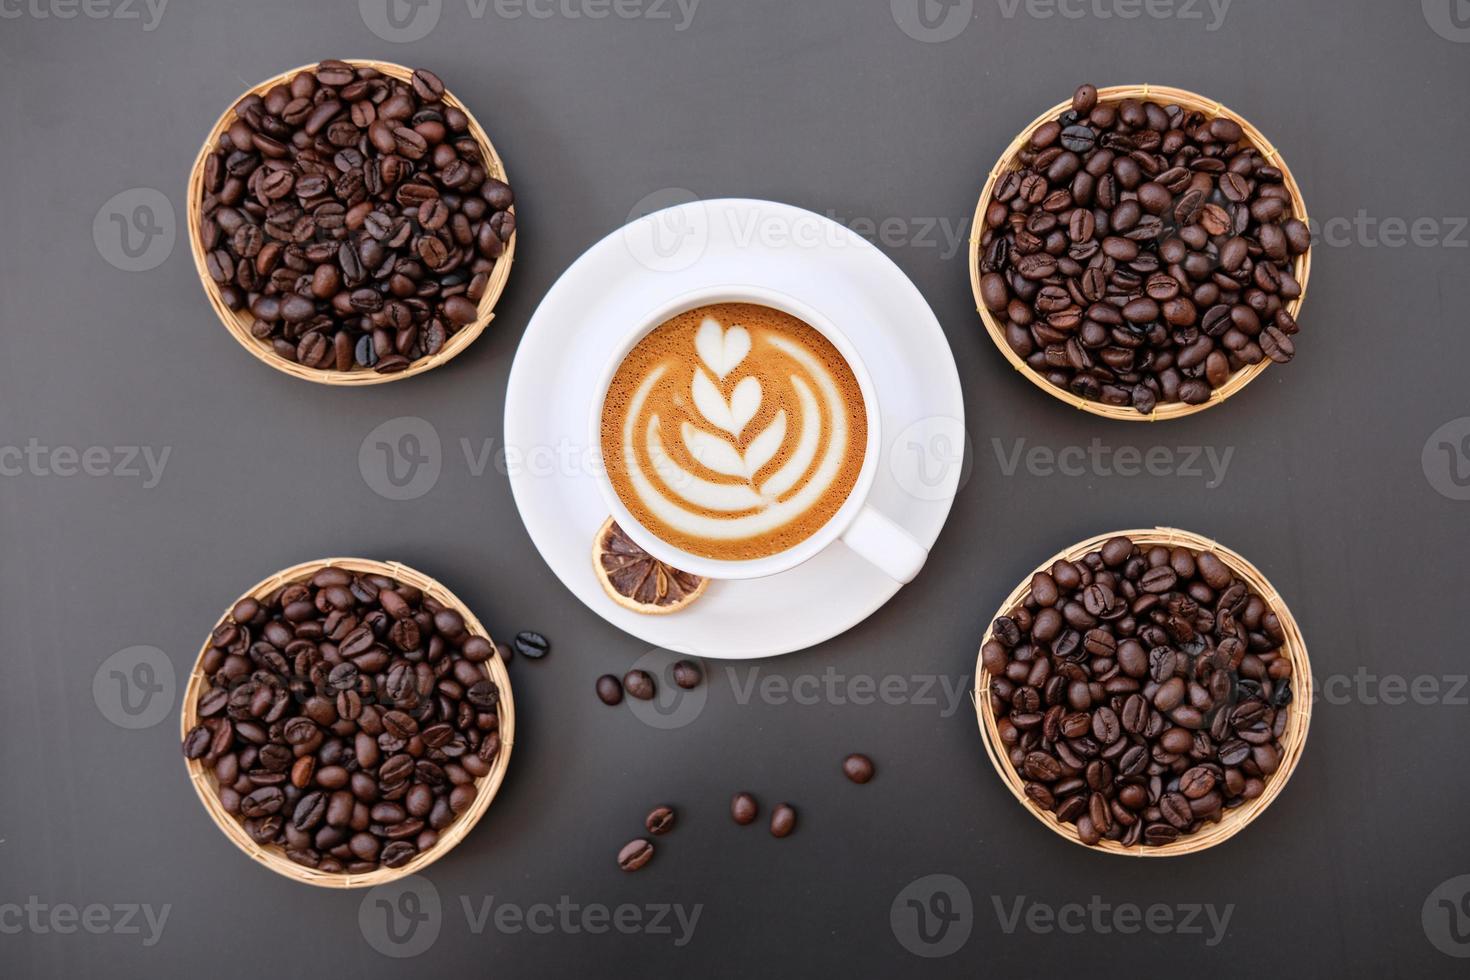 kaffekopp på bordsbakgrund och kaffe på morgonen foto